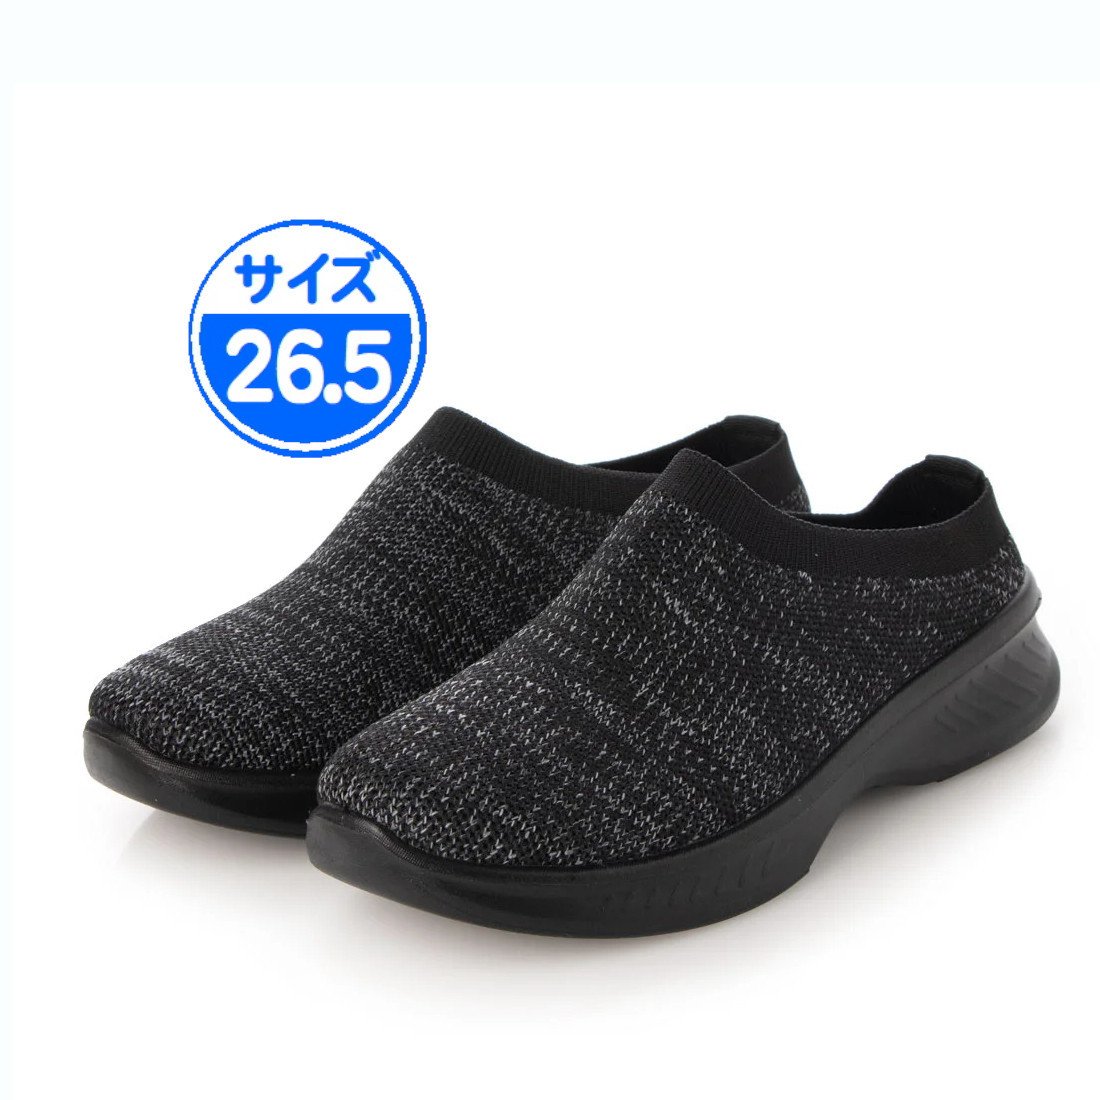 [ новый товар не использовался ] легкий сабо сандалии черный чёрный 26.5cm 22536